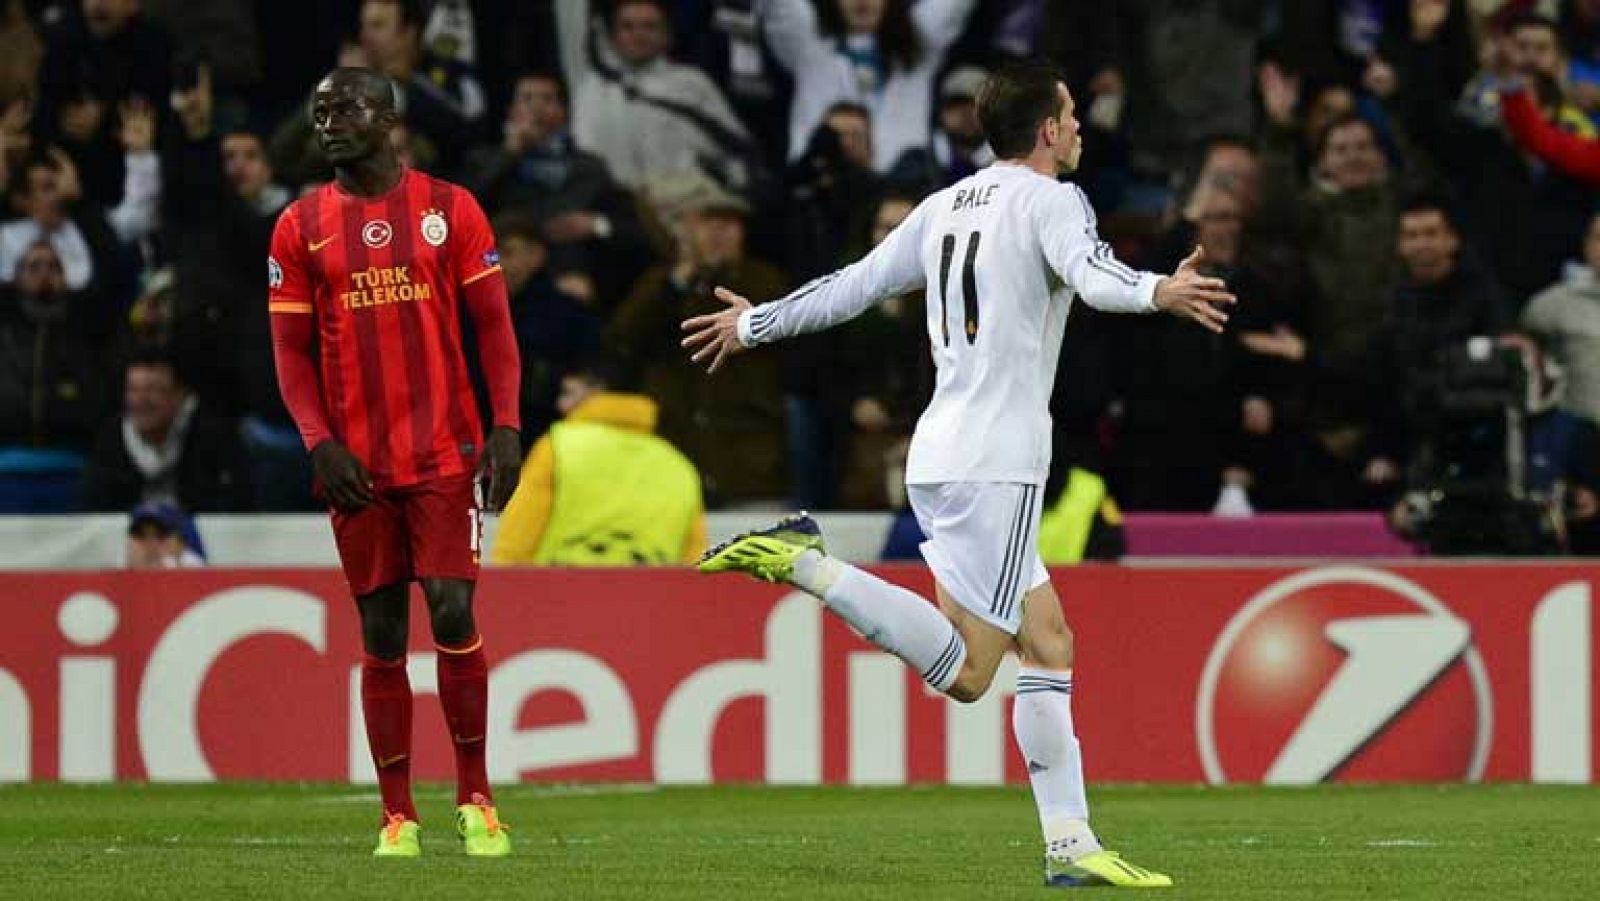 El jugador del Real Madrid Gareth Bale ha marcado el primer gol de su equipo ante el Galatasaray tras convertir una falta directa. La falta previa la había cometido Felipe Melo sobre Pepe.